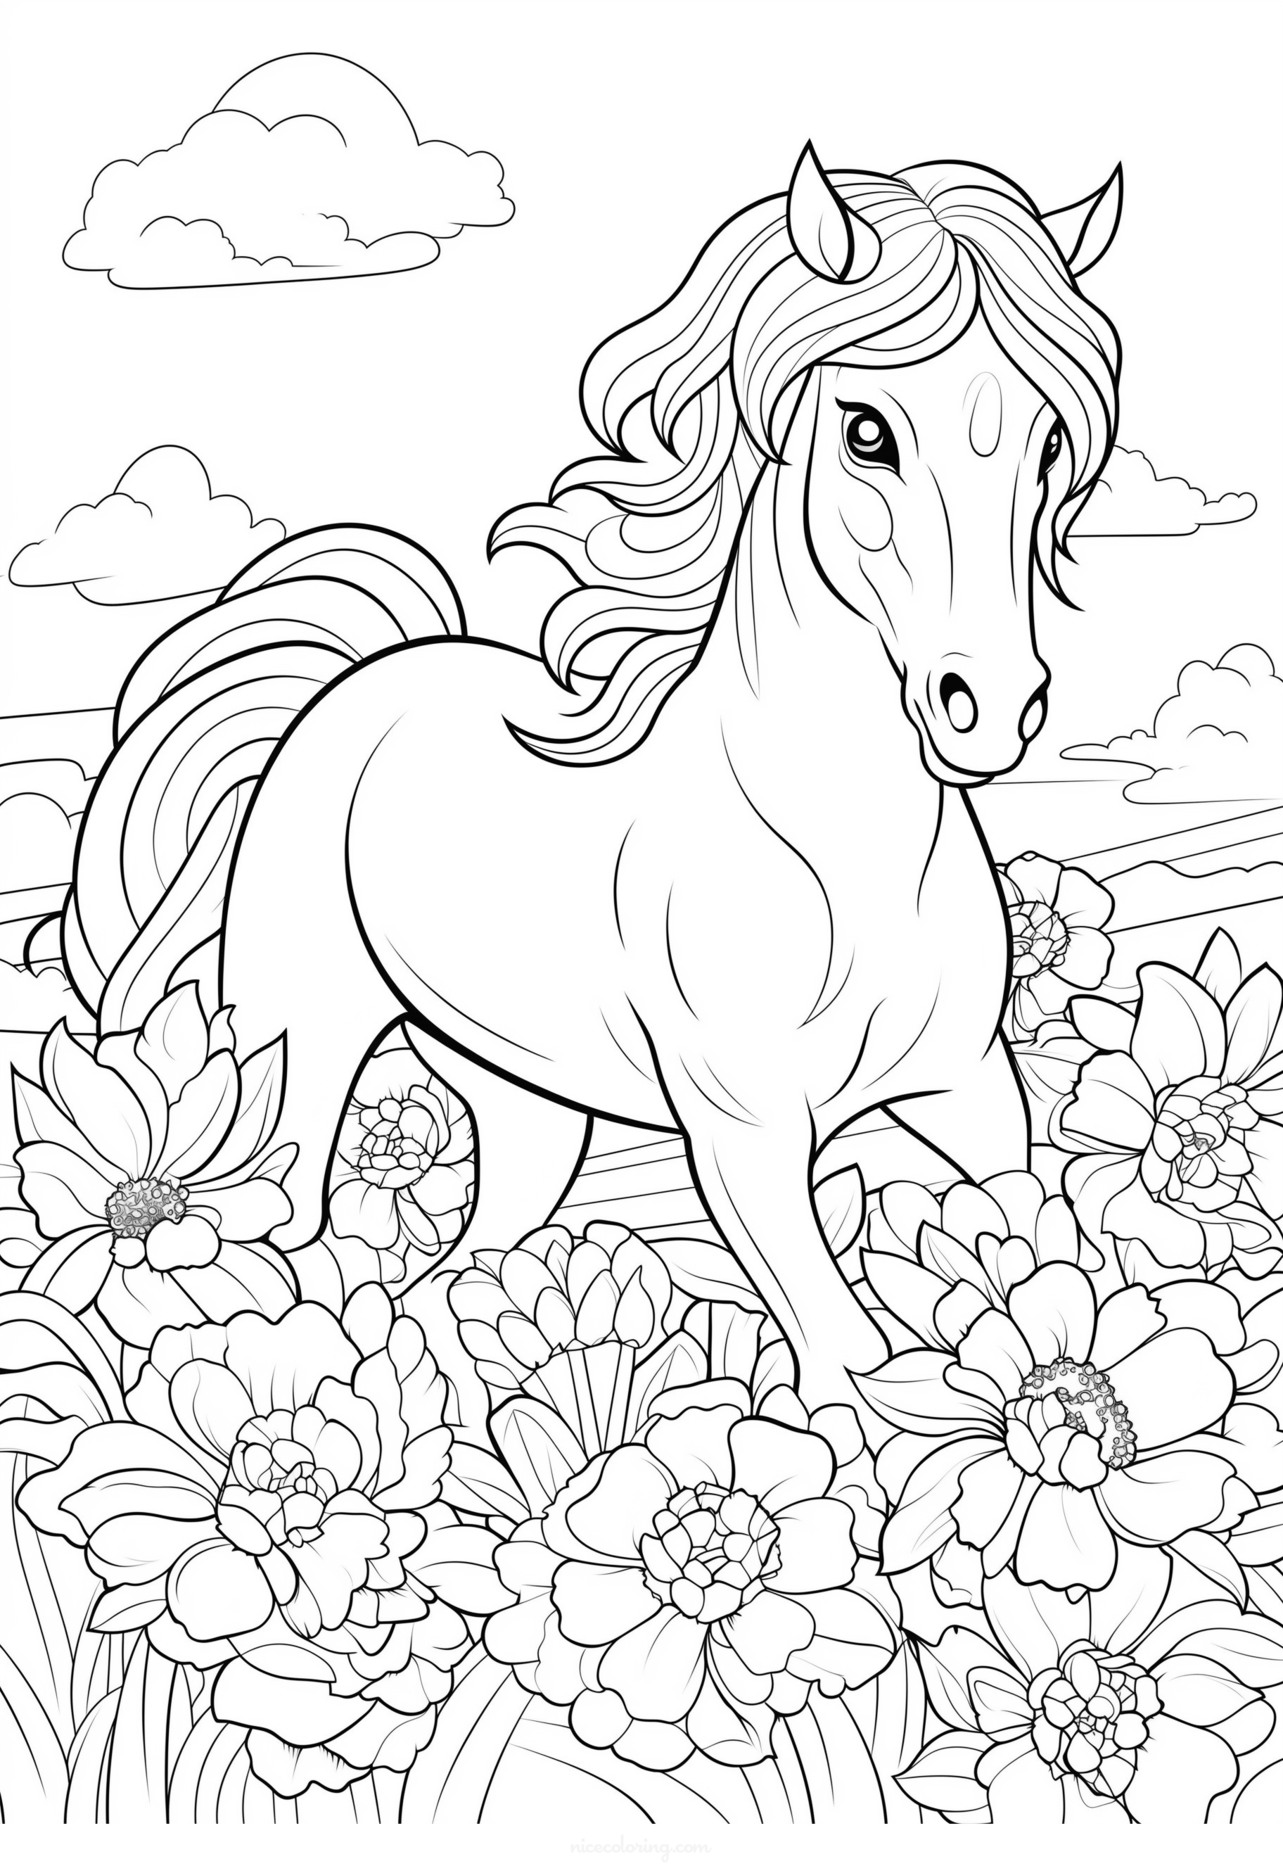 Página de colorear mostrando un caballo corriendo en el campo